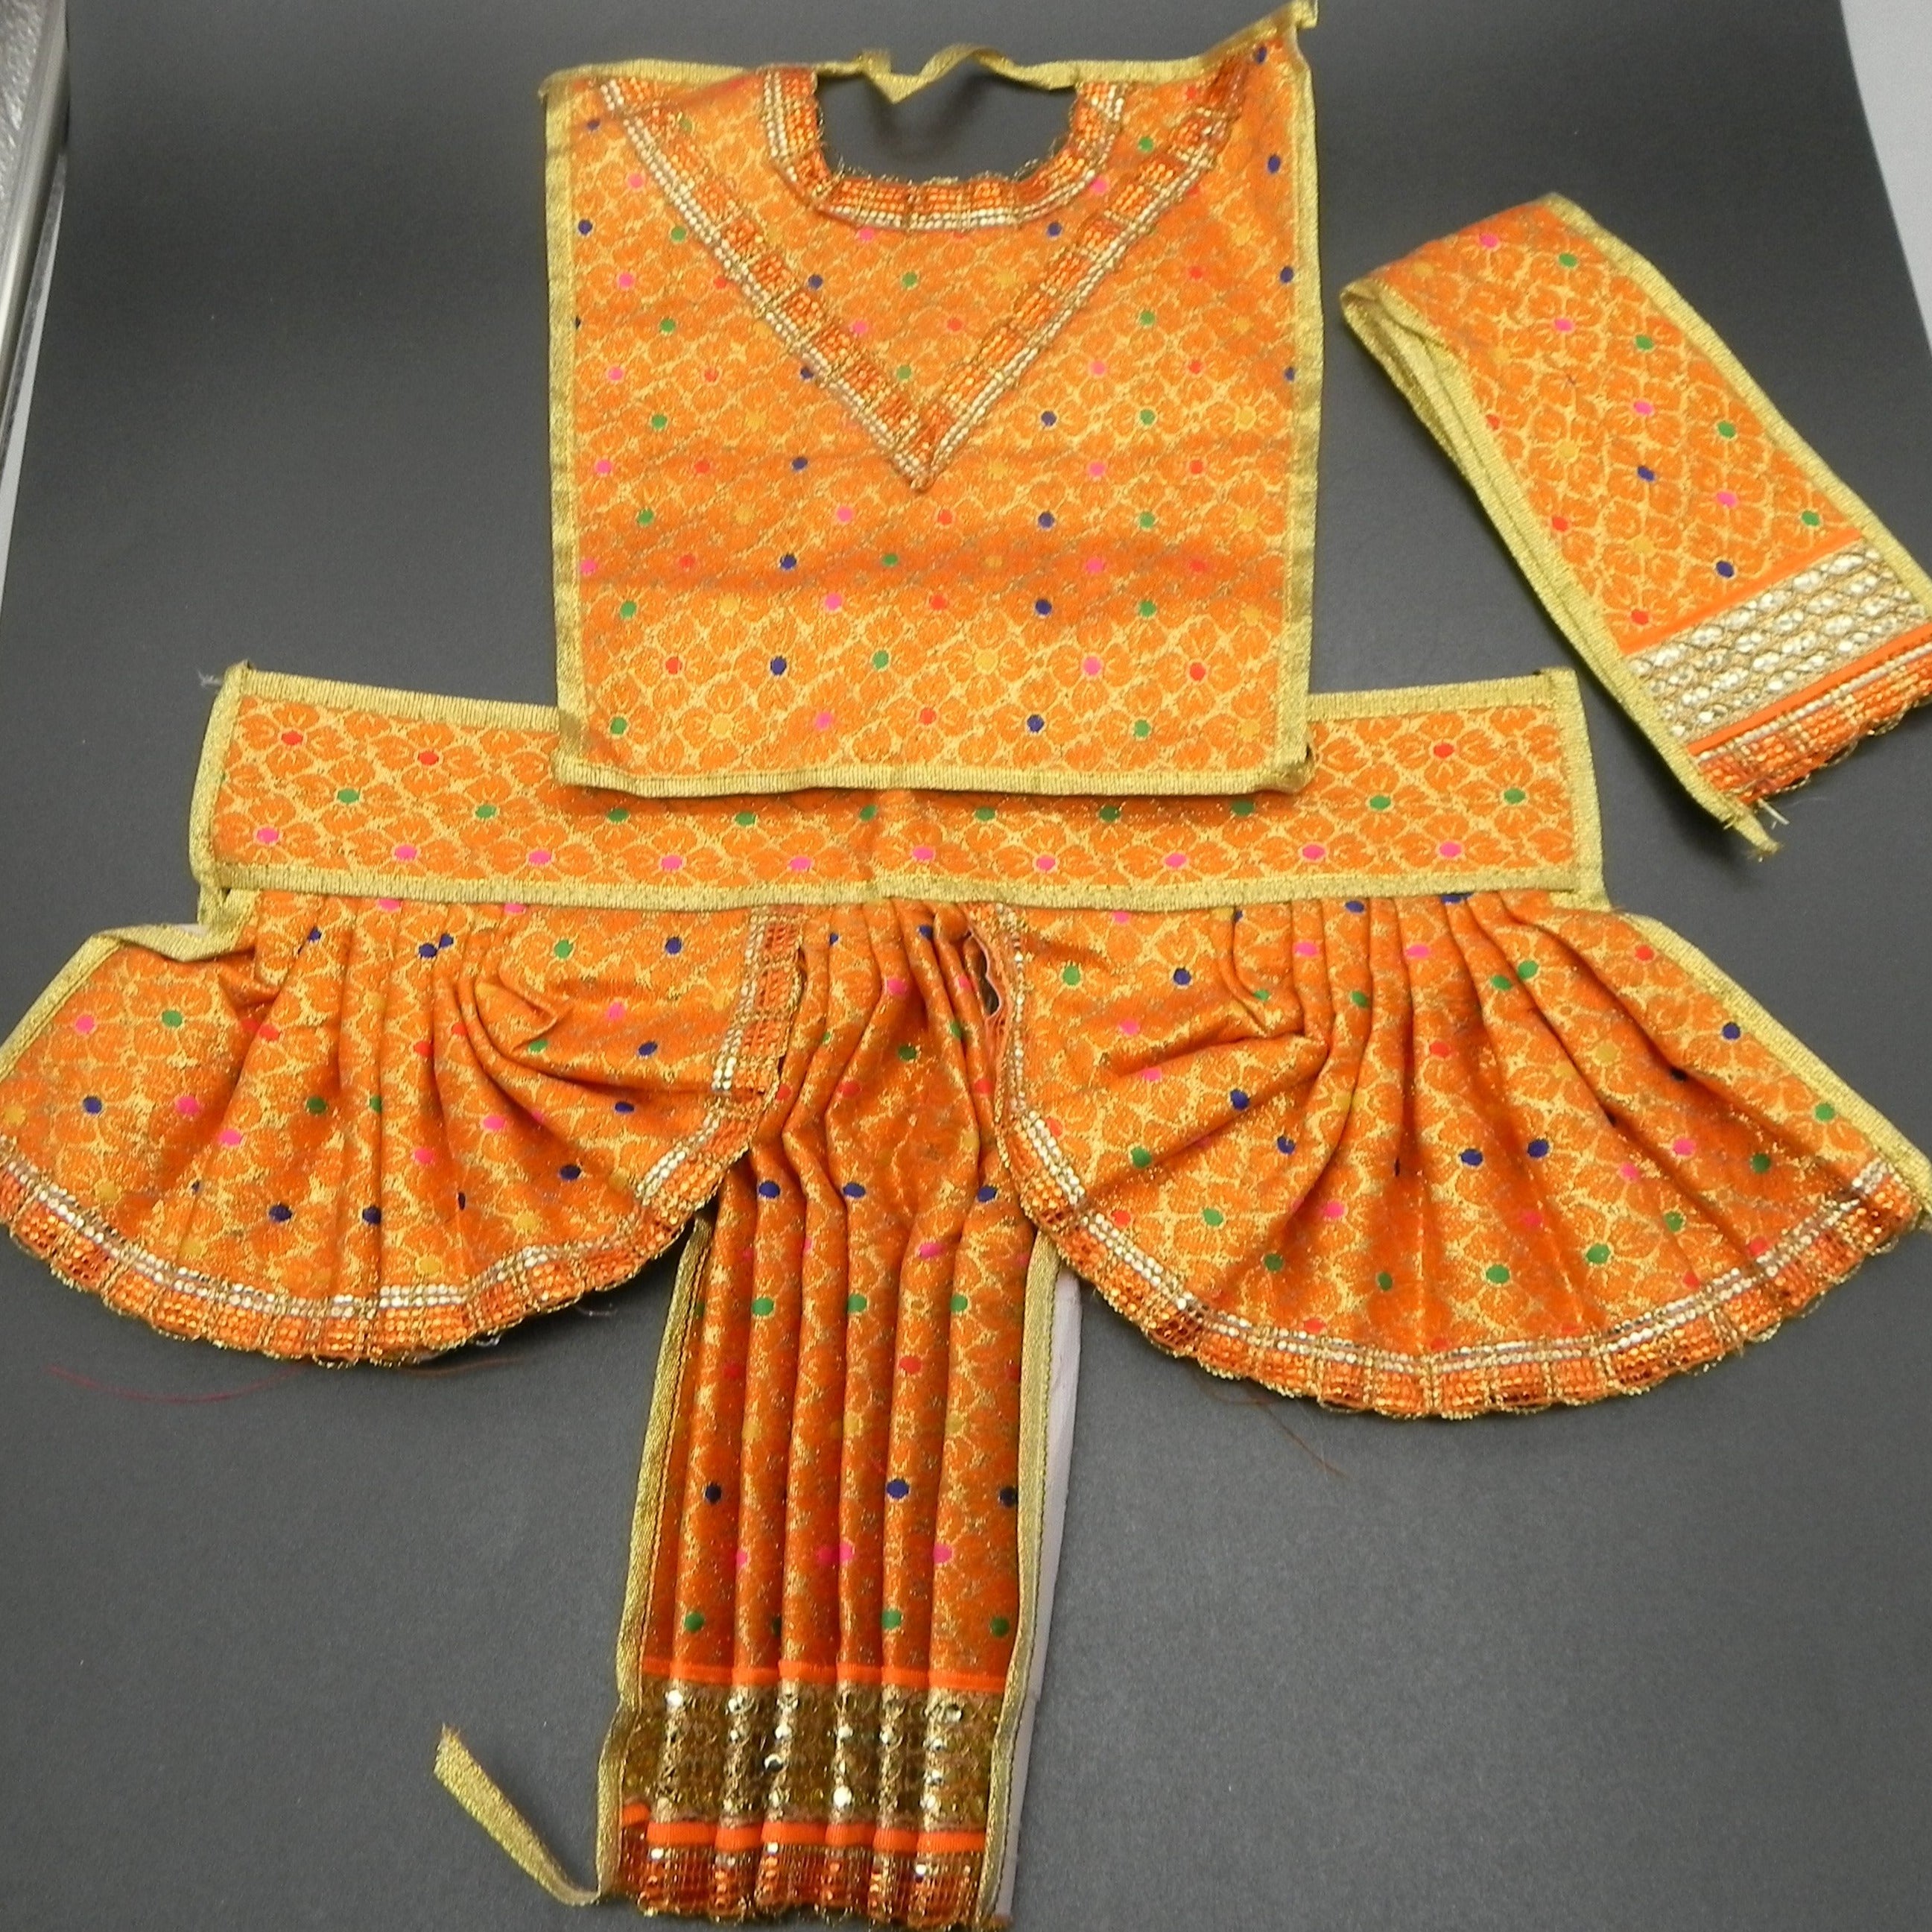 Buy Shivlingam Poshak for Shivratri Pooja | Lord Shiva Dress for Idol |  Mahadev Cloth | Mahadev Dress - (20 CM X 35 CM) (Yellow) Online at Low  Prices in India - Amazon.in